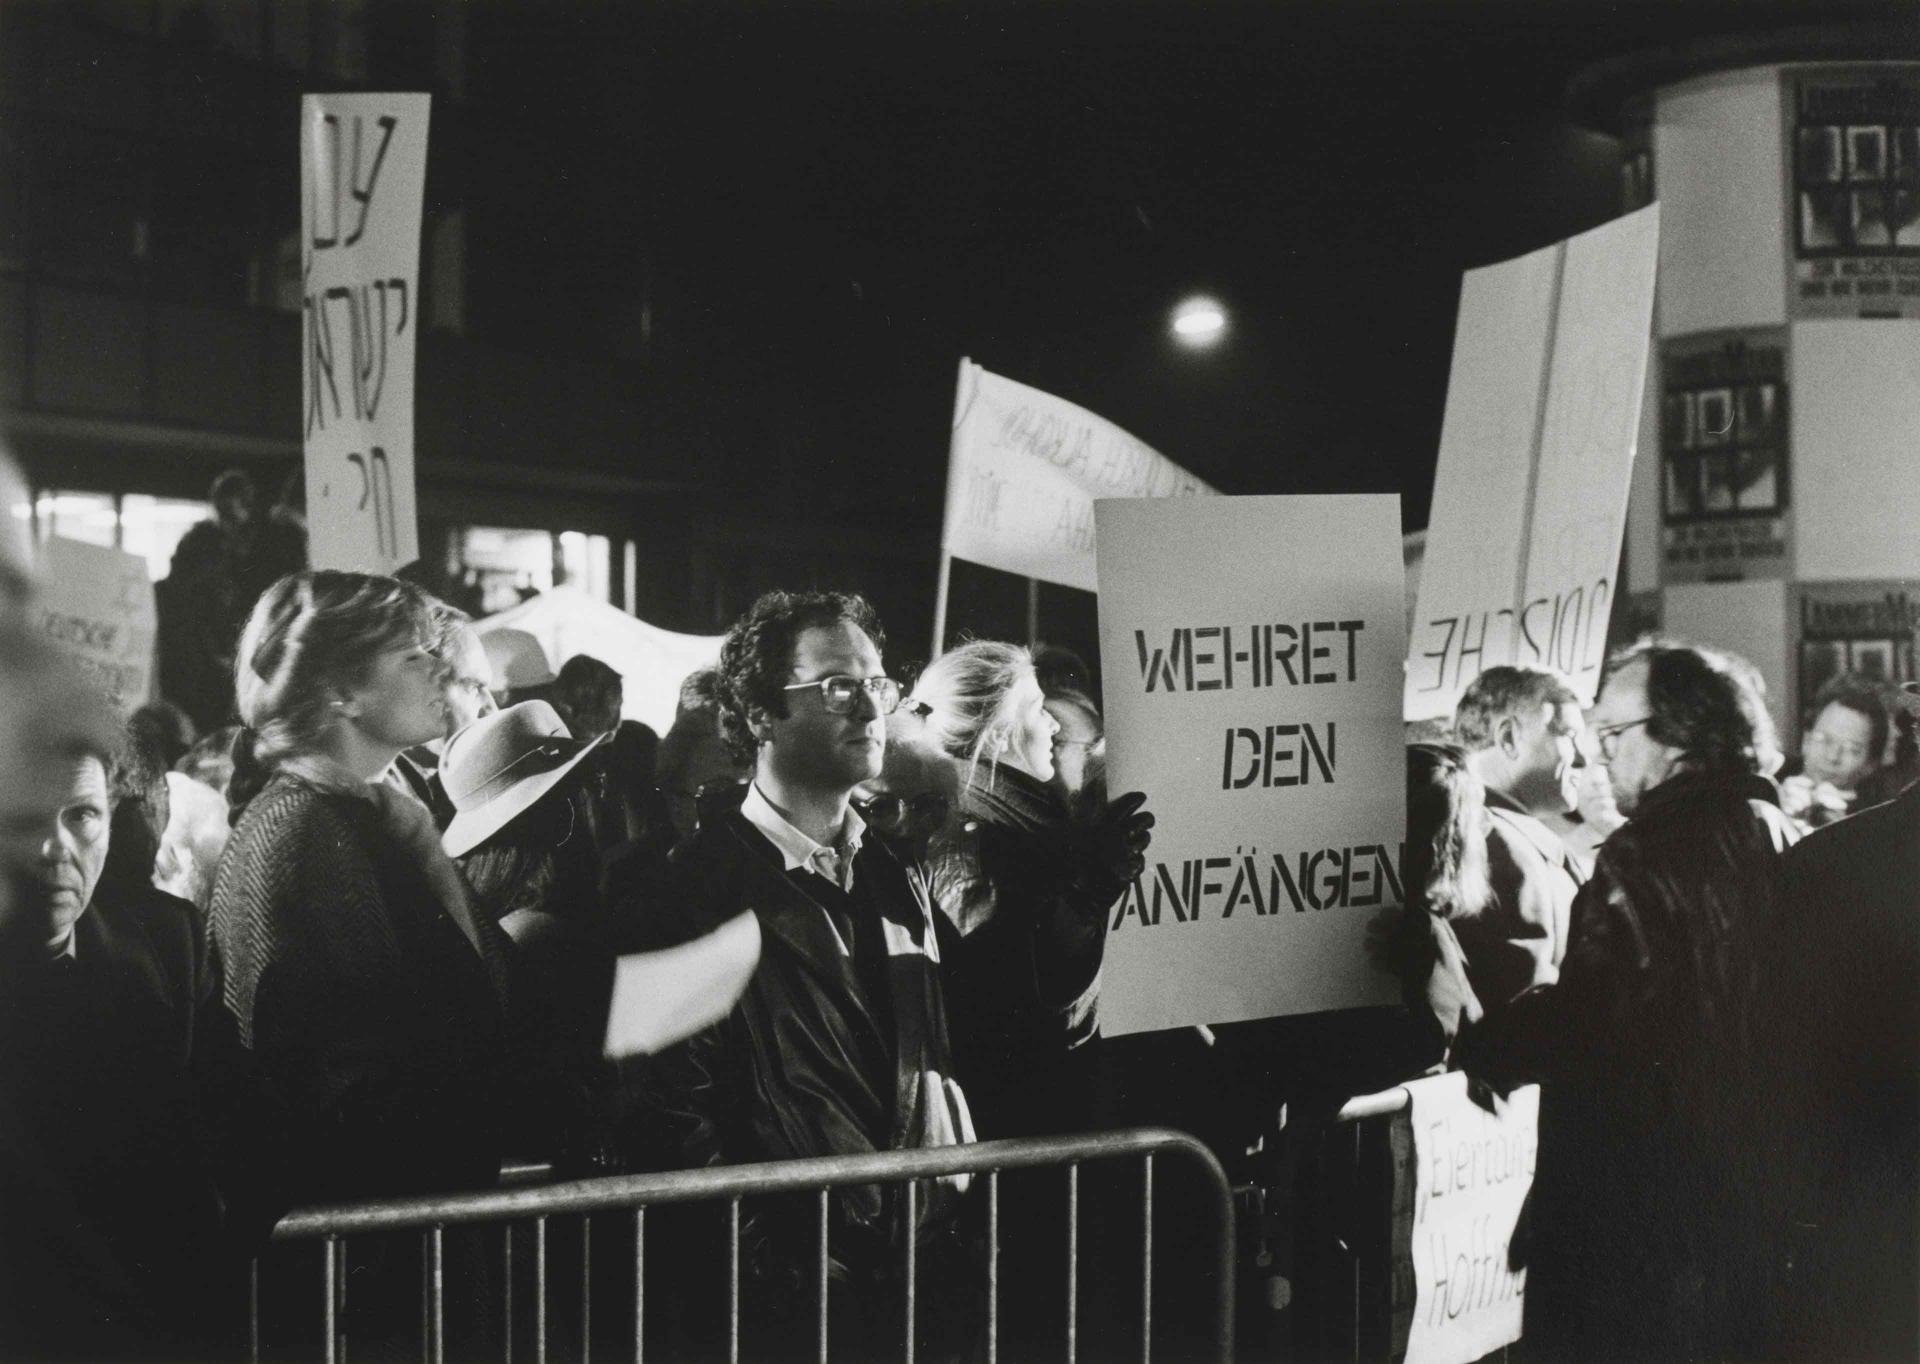 Schwarz-Weiß-Fotografie von Protestierenden mit Plakaten mit Aufschriften wie "Wehret den Anfängen"